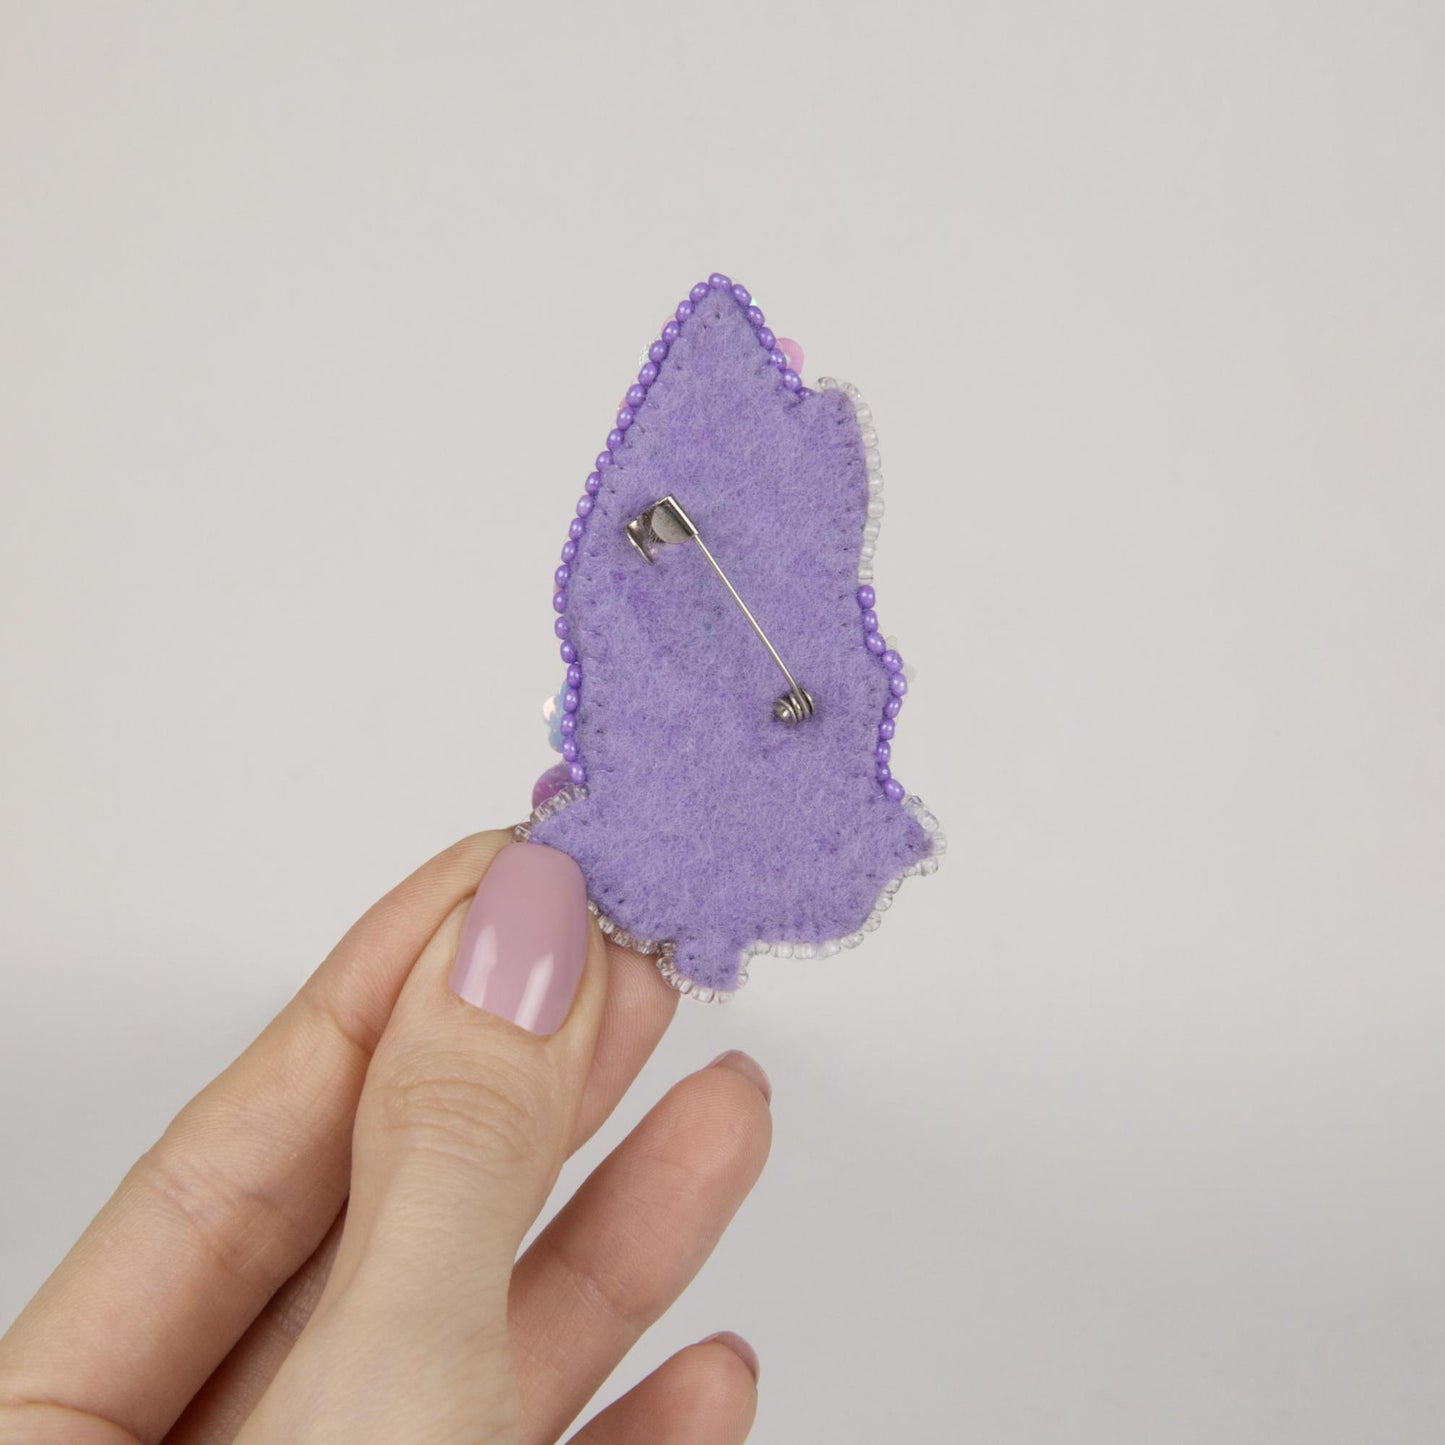 BP-276 Beadwork Kit de bordado para crear broches Crystal Art "Lilac" Momentos Magicos